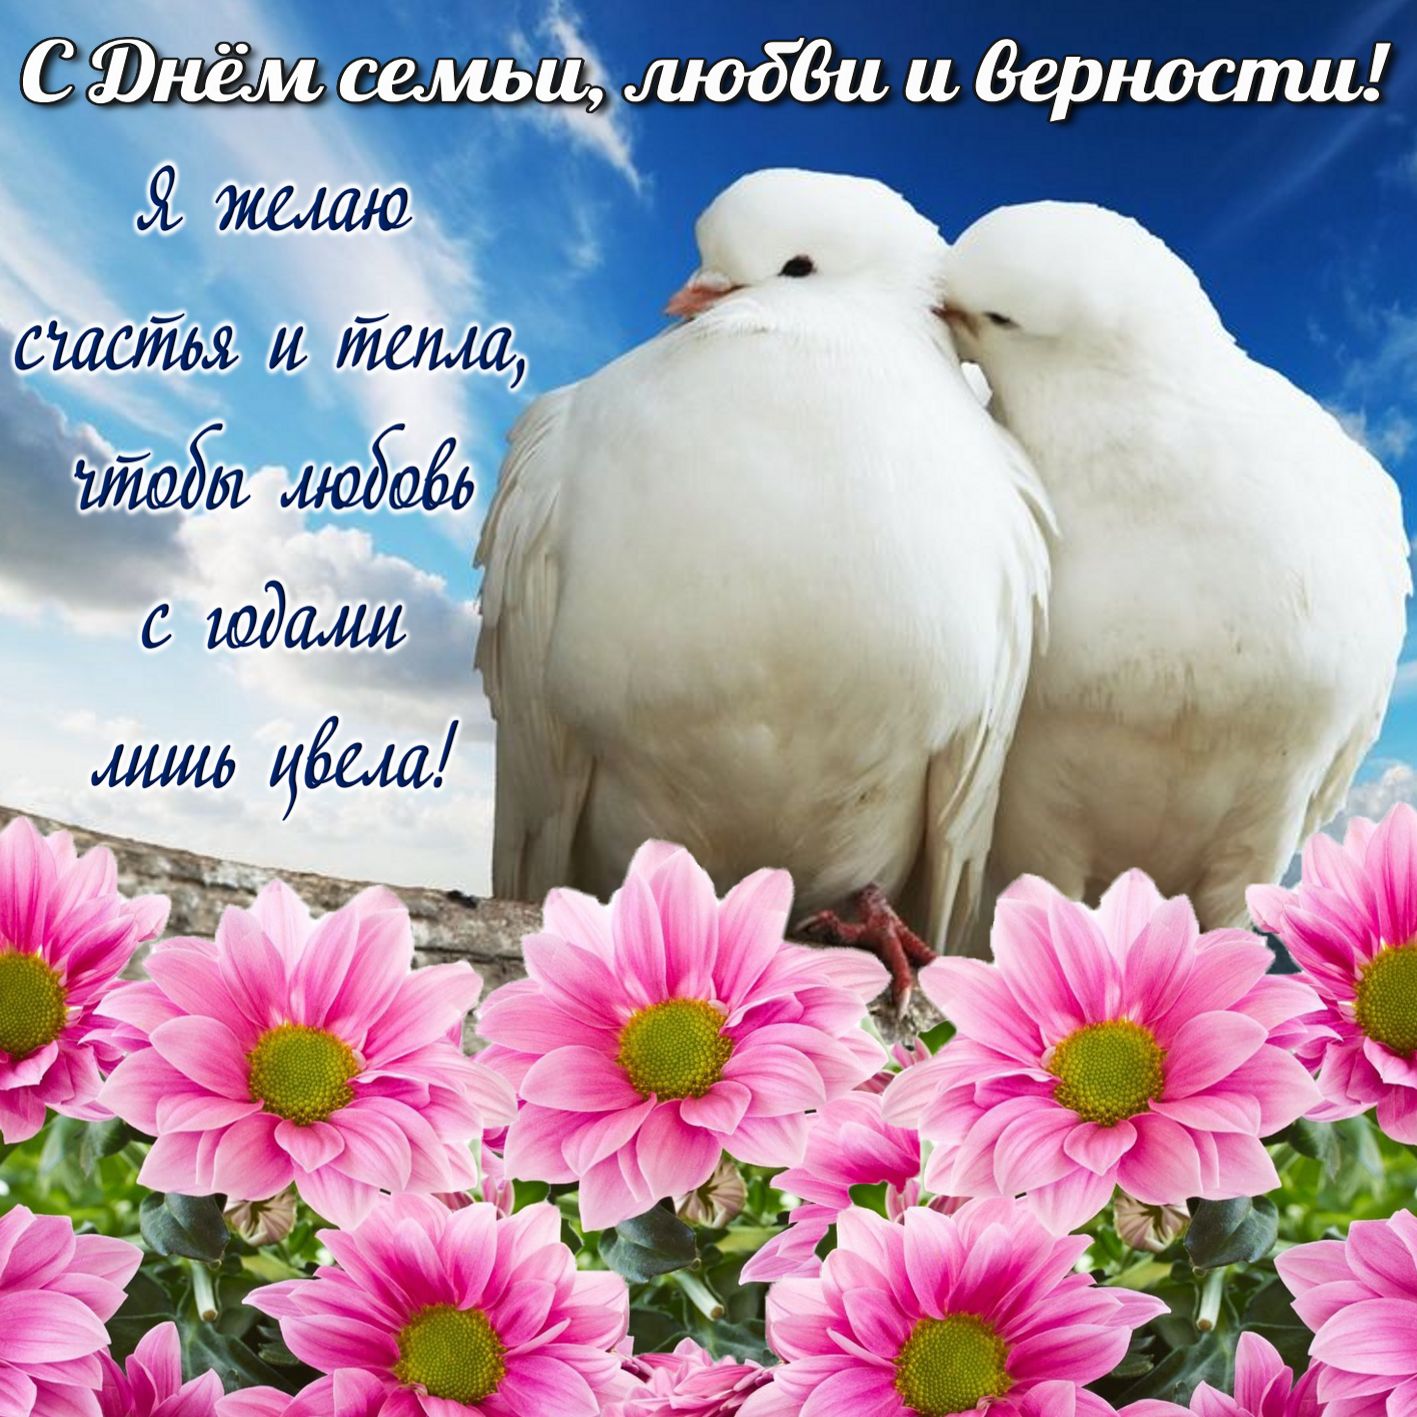 Открытка на День семьи любви и верности влюбленные голубки на фоне цветов